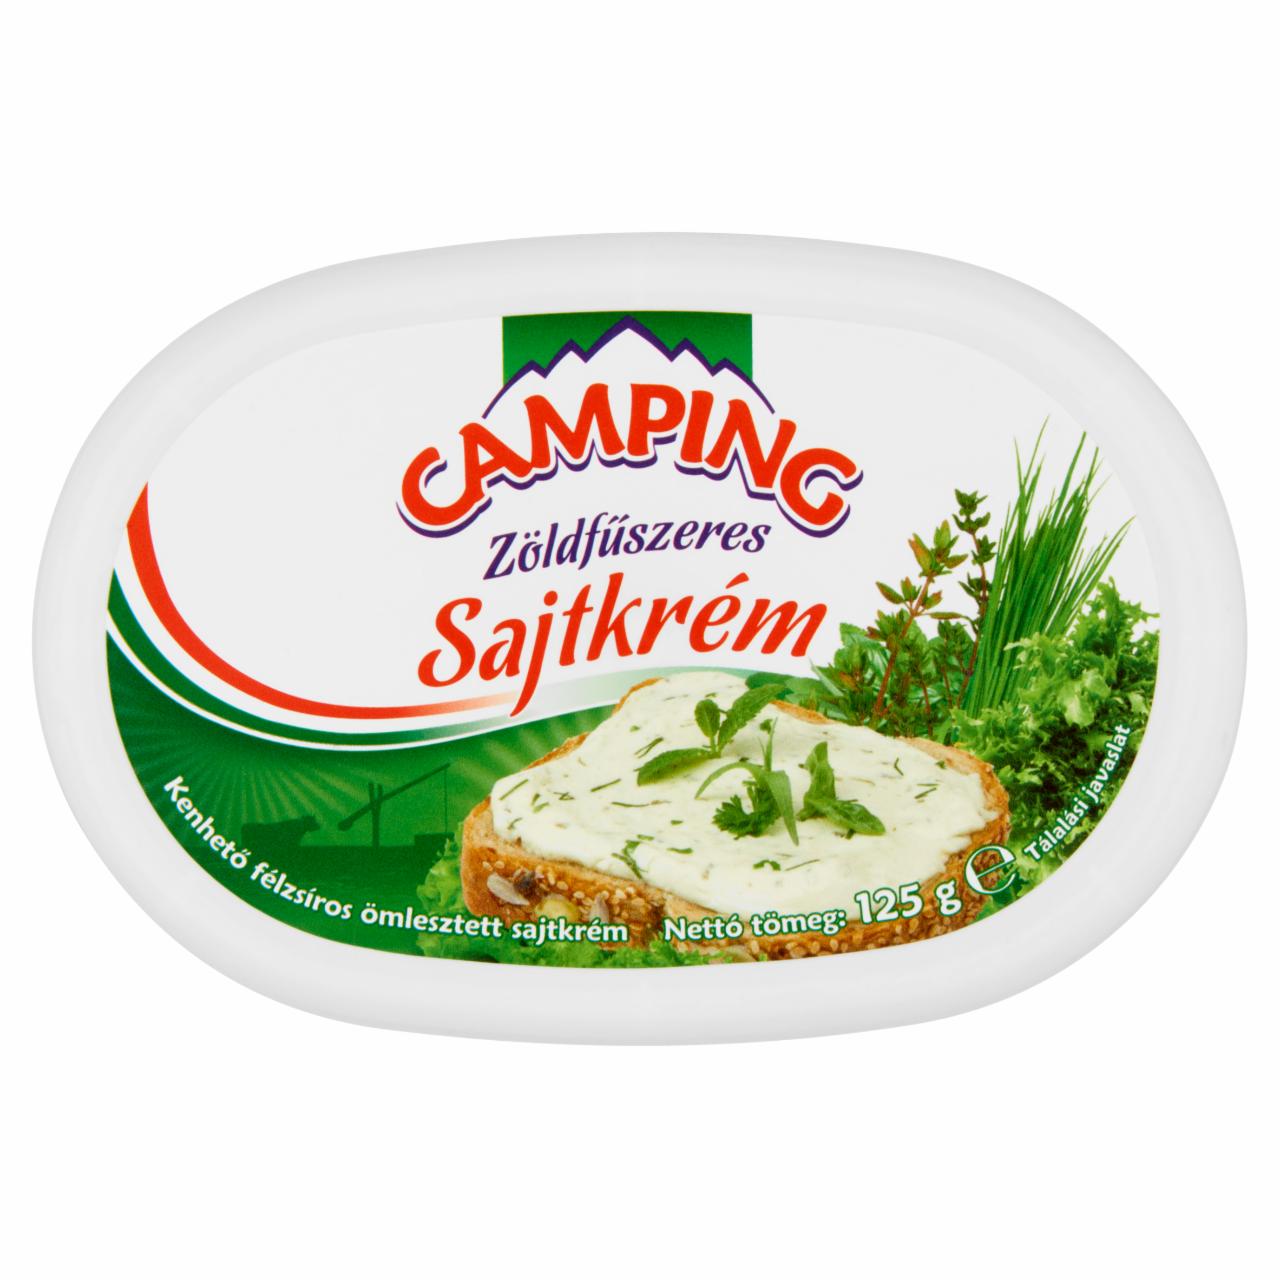 Képek - Camping zöldfűszeres félzsíros sajtkrém 125 g